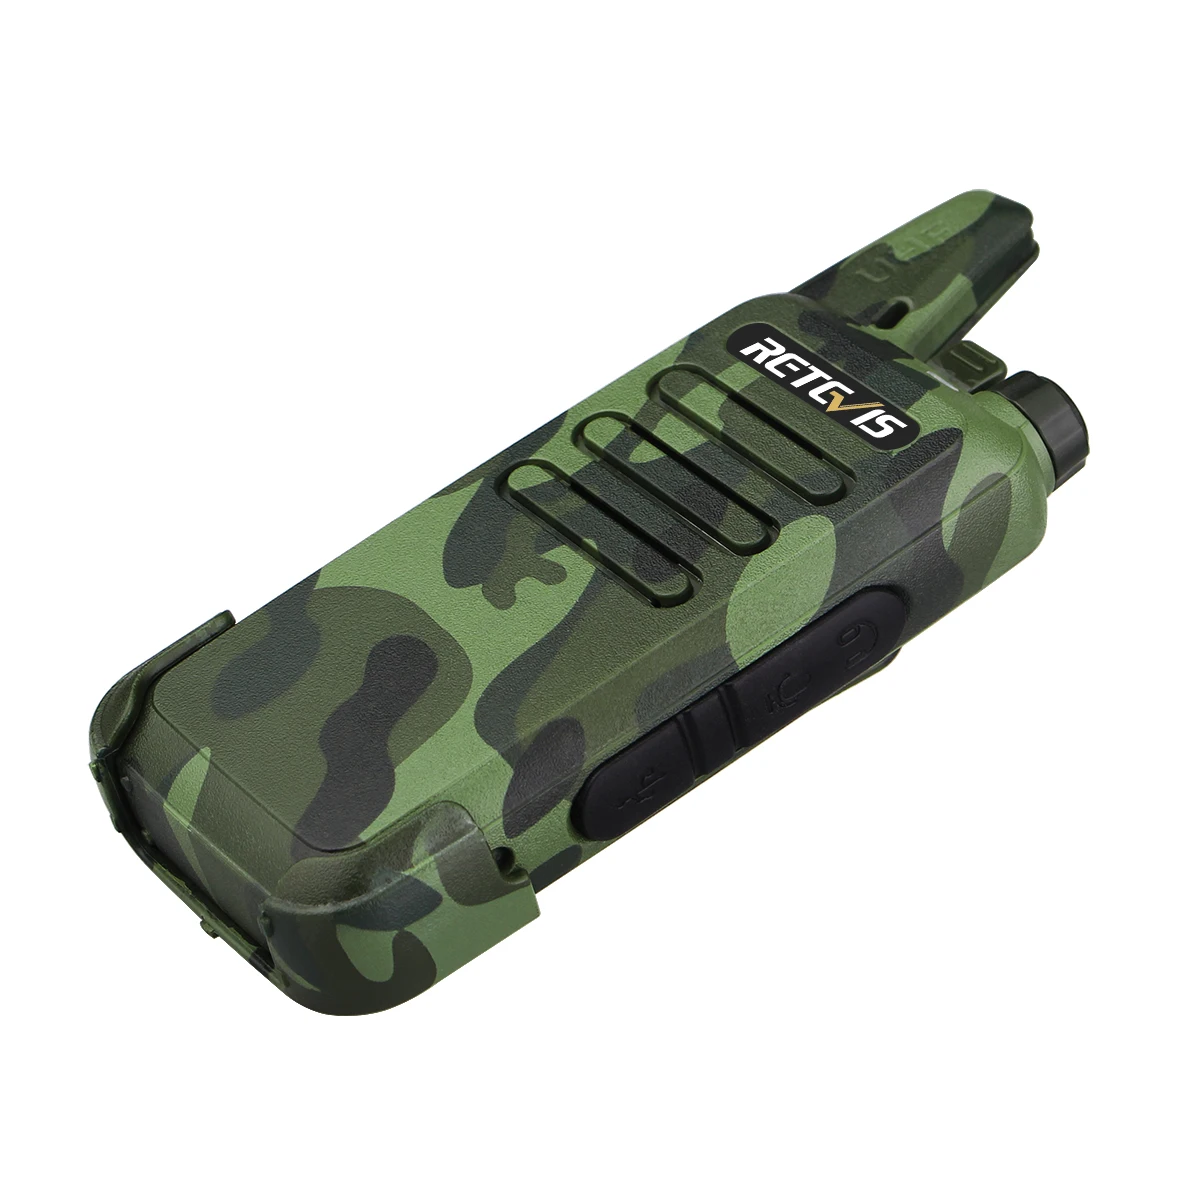 Retevis Rt22 Camouflage Emergency Alarm Monitor Walkie Talkie 2w Uhf400